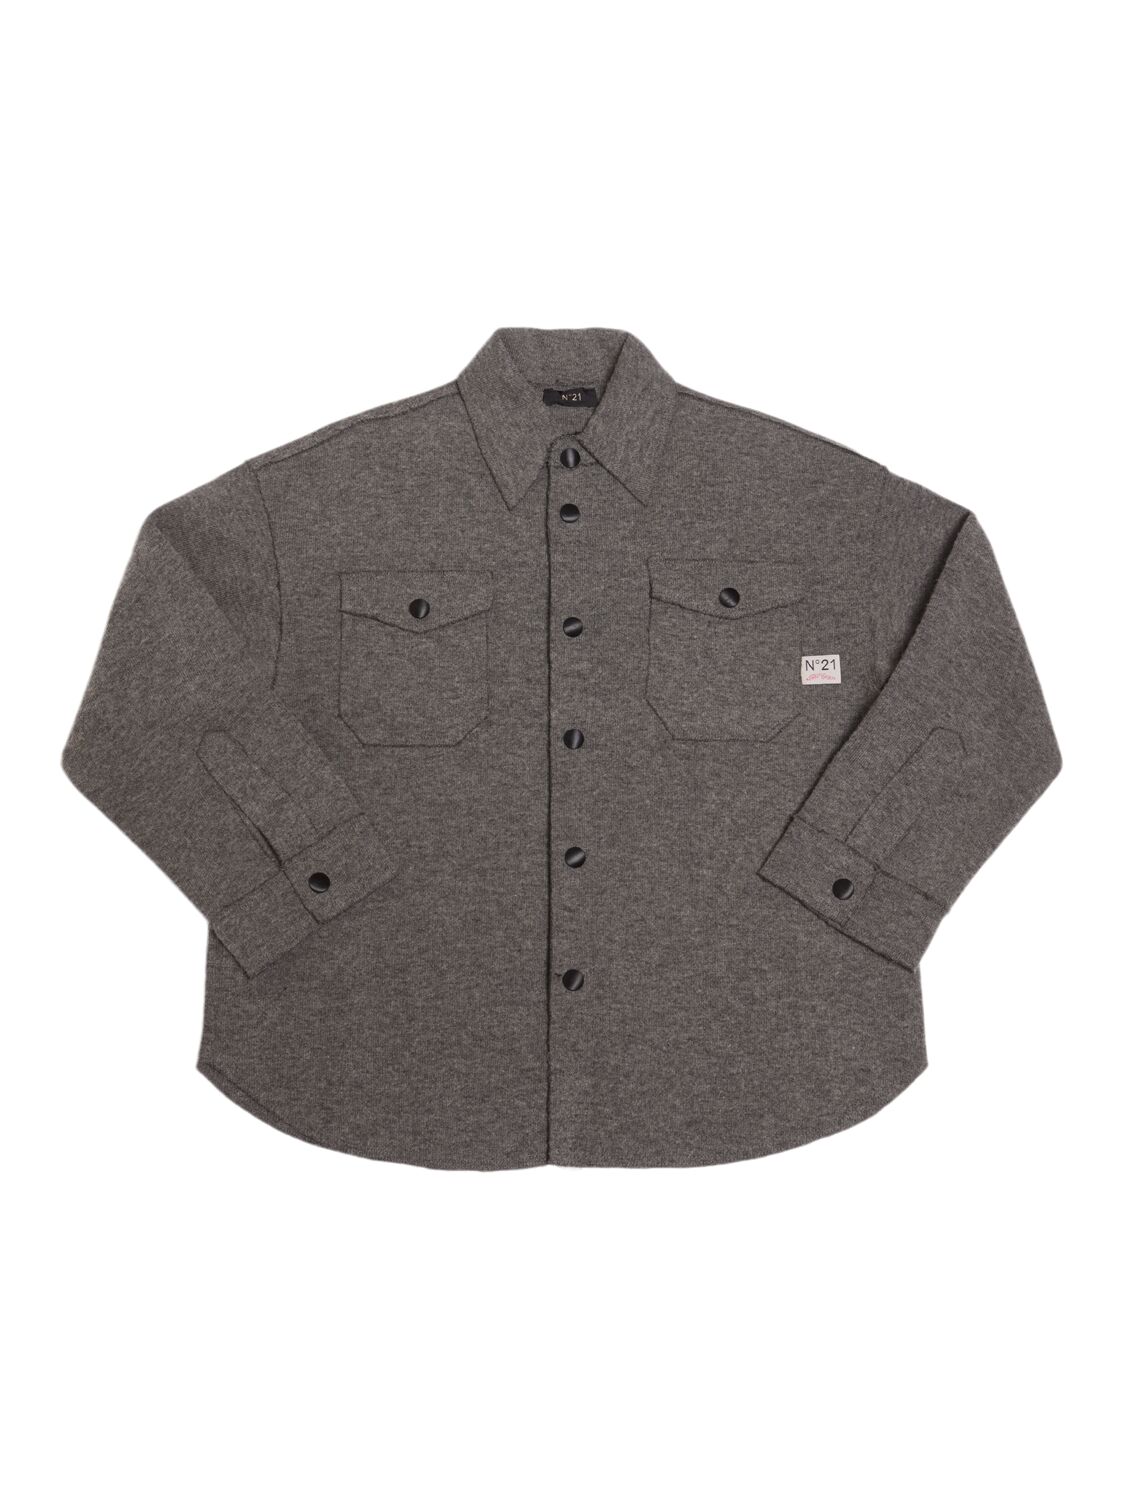 N°21 Wool Blend Overshirt In Gray